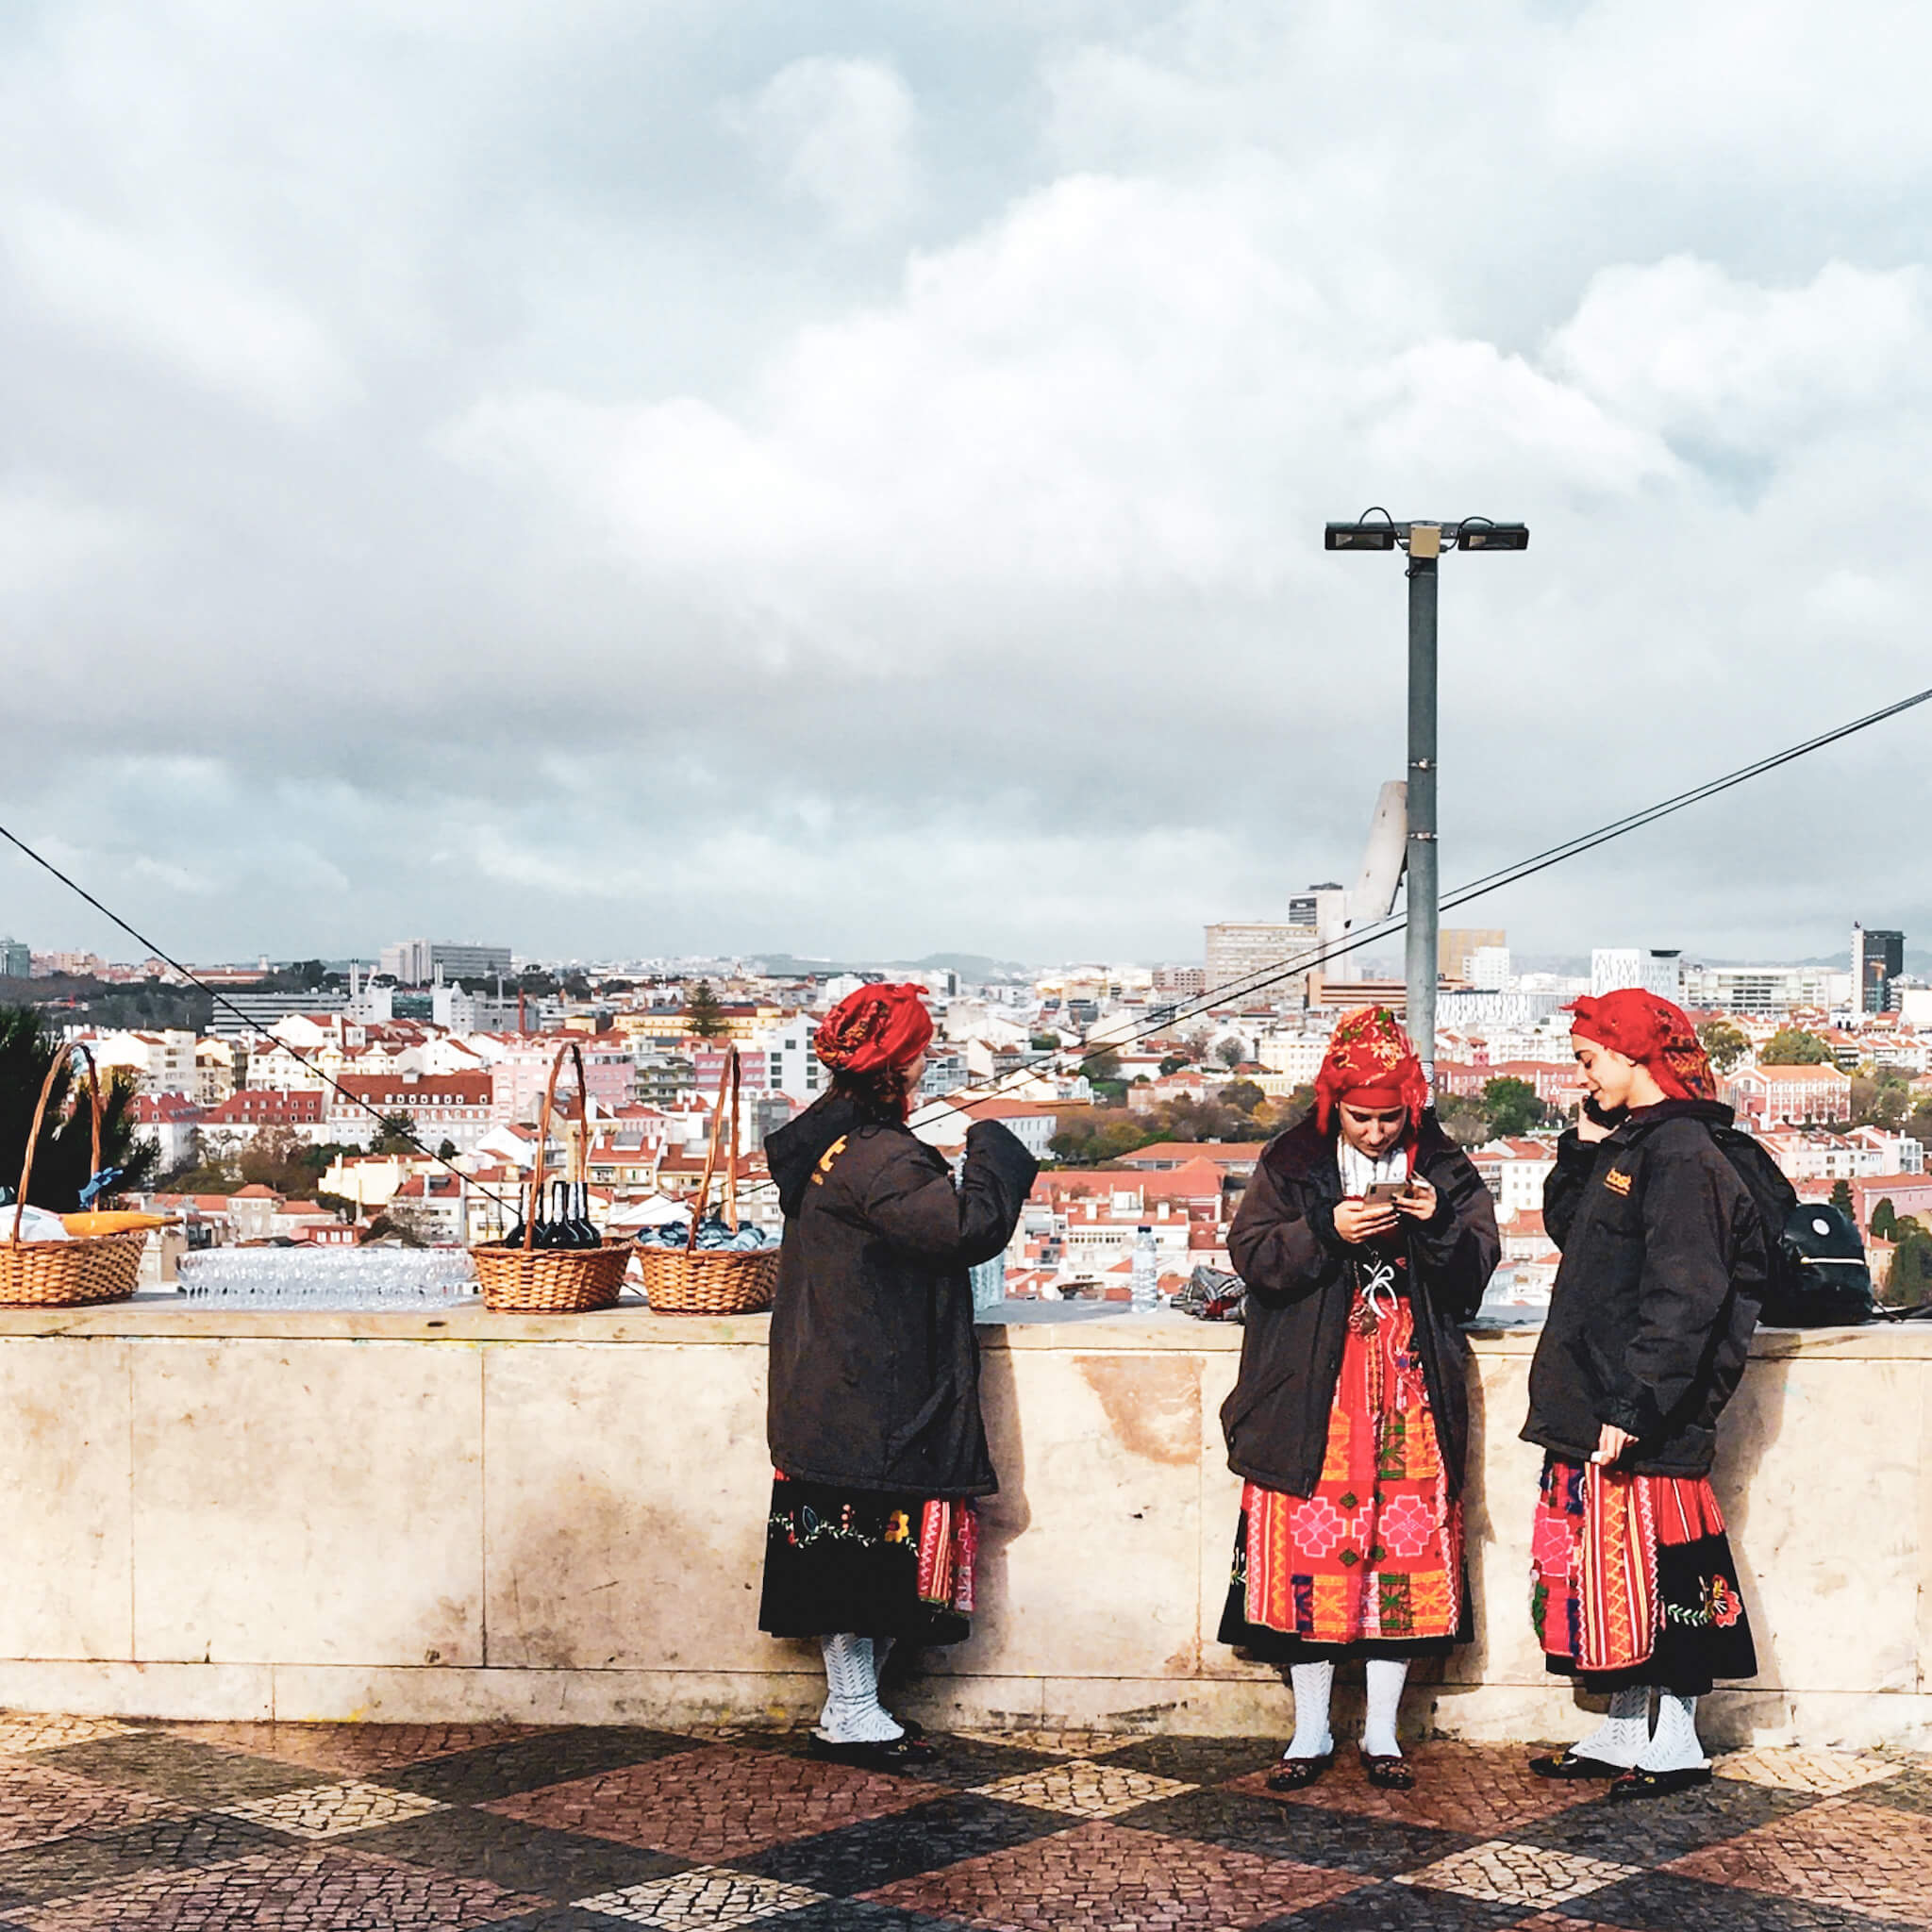 Frauen in Tracht an einem Aussichtspunkt in LIssabon